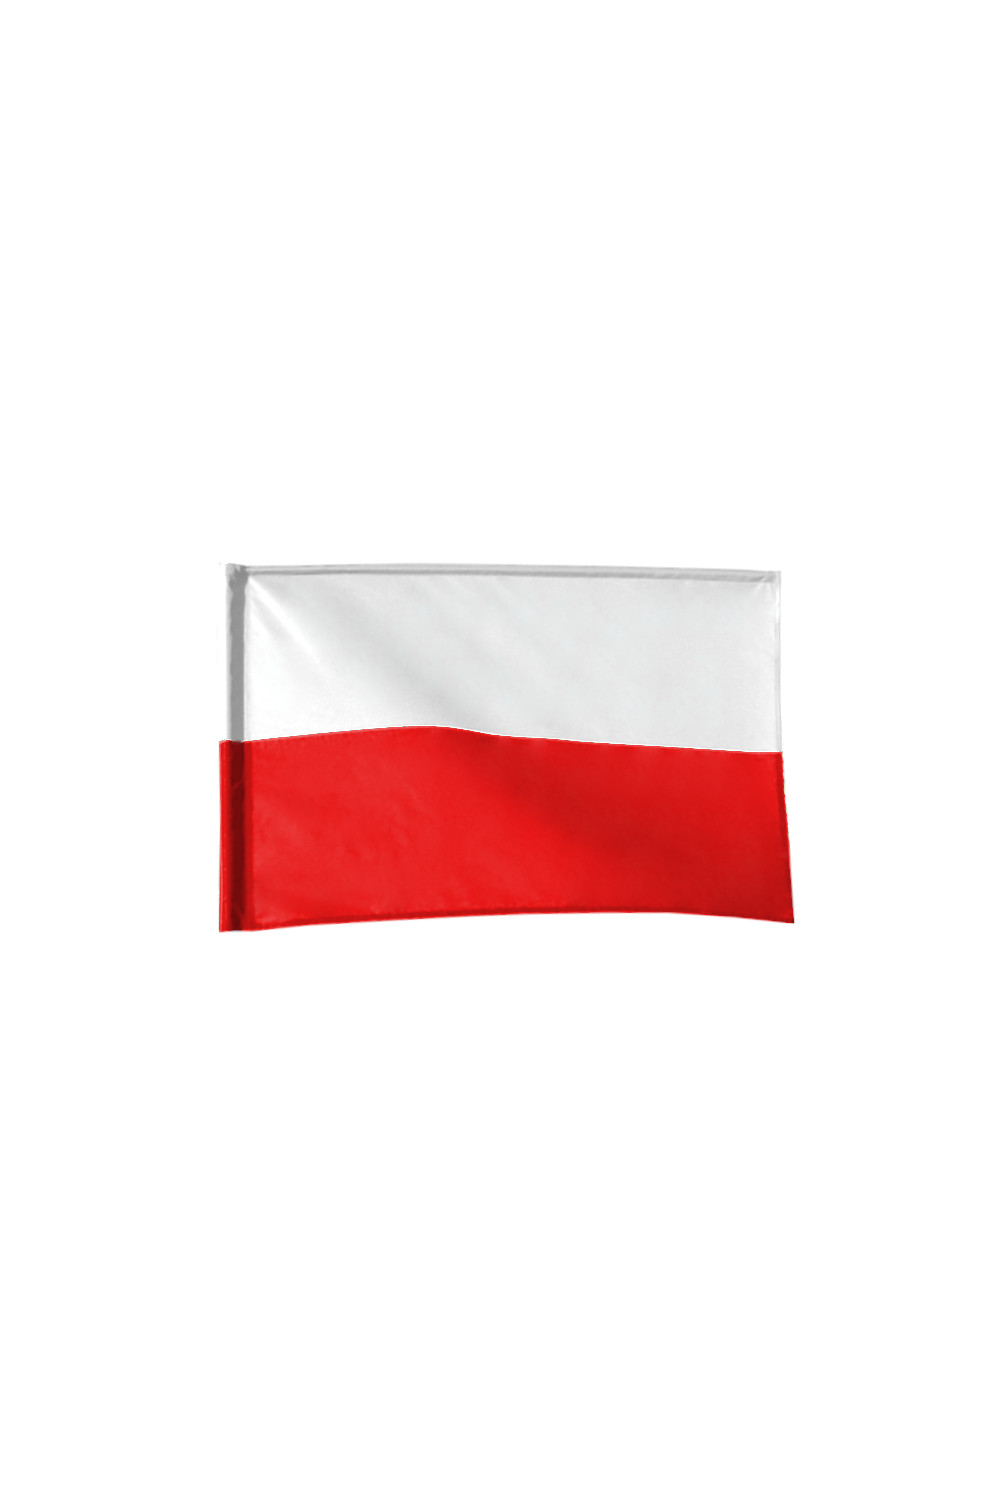 FLAGA POLSKI POLSKA Z TUNELEM NARODOWA 125x75